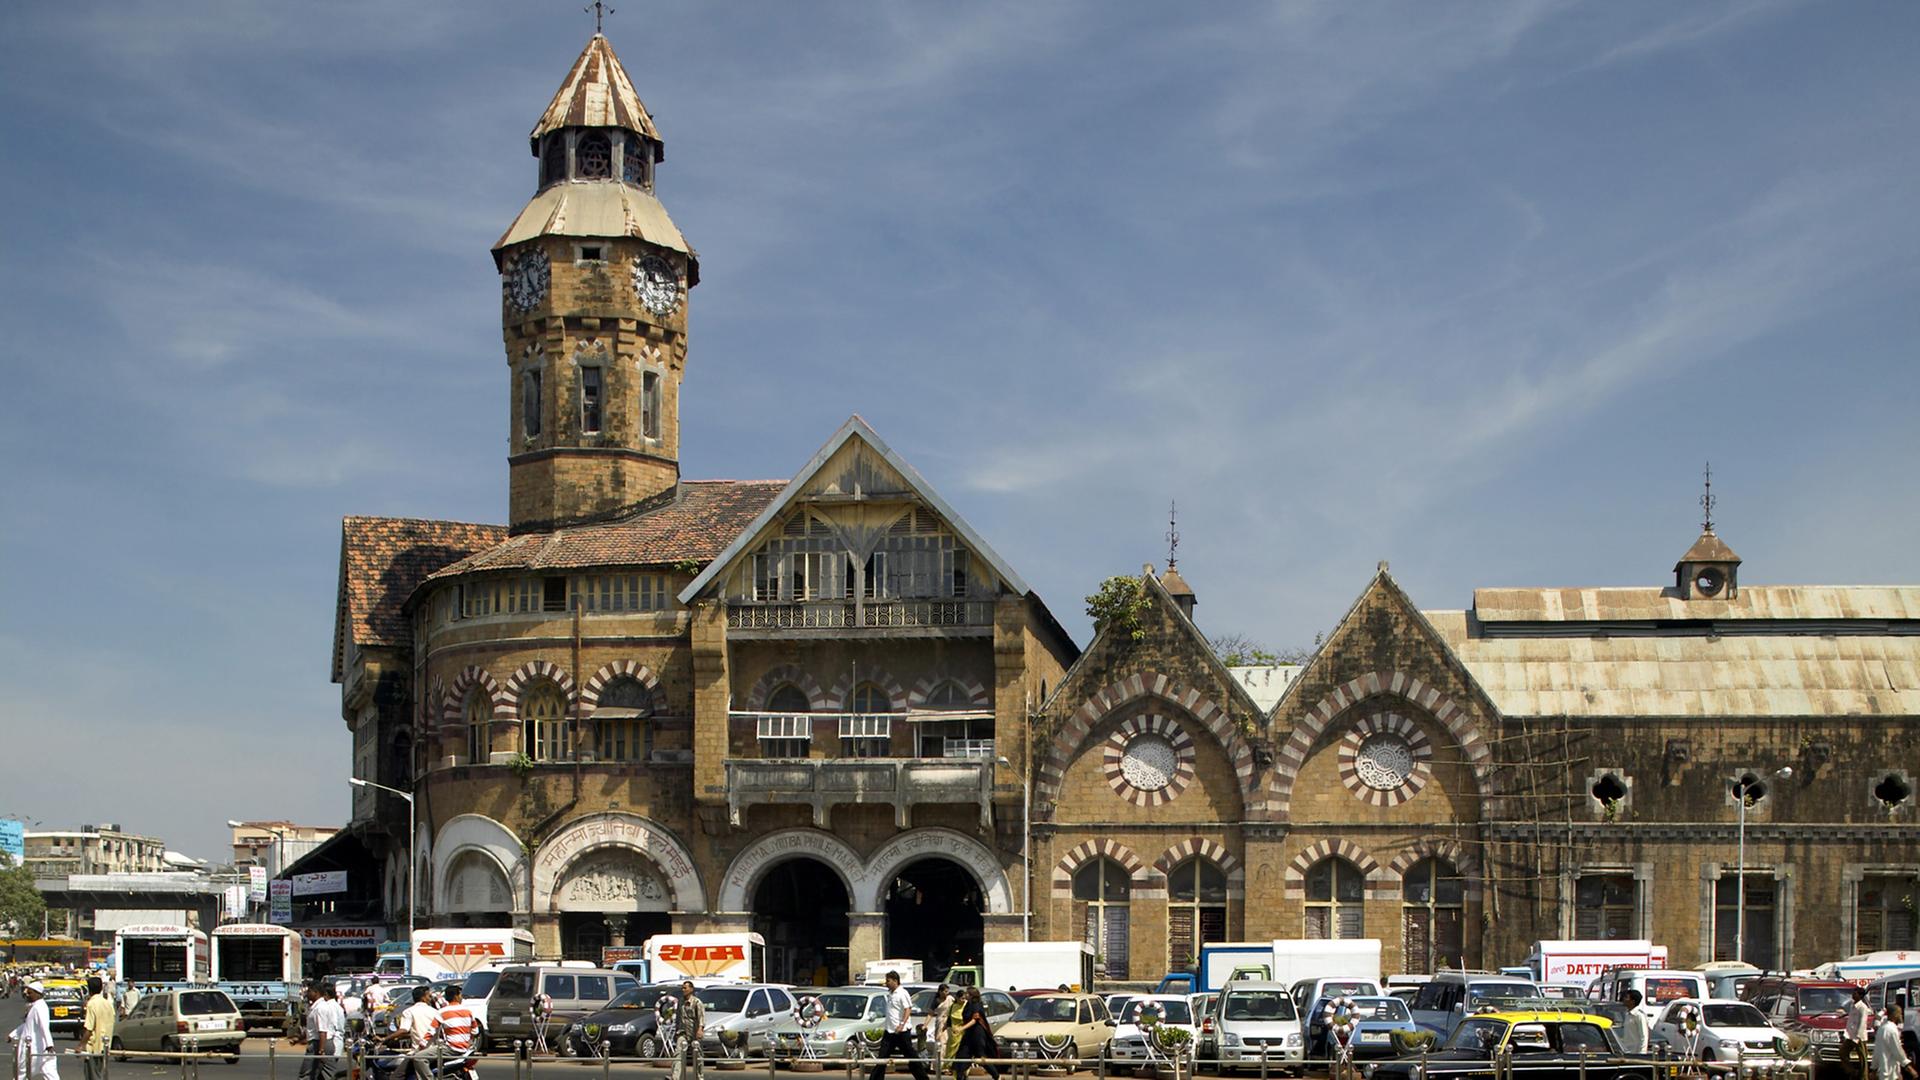 Blick auf den Crawford Market im indischen Mumbai, der von außen einer mittelalterlichen Festung gleicht: Es ist der größte kommunale Markt in der Stadt.